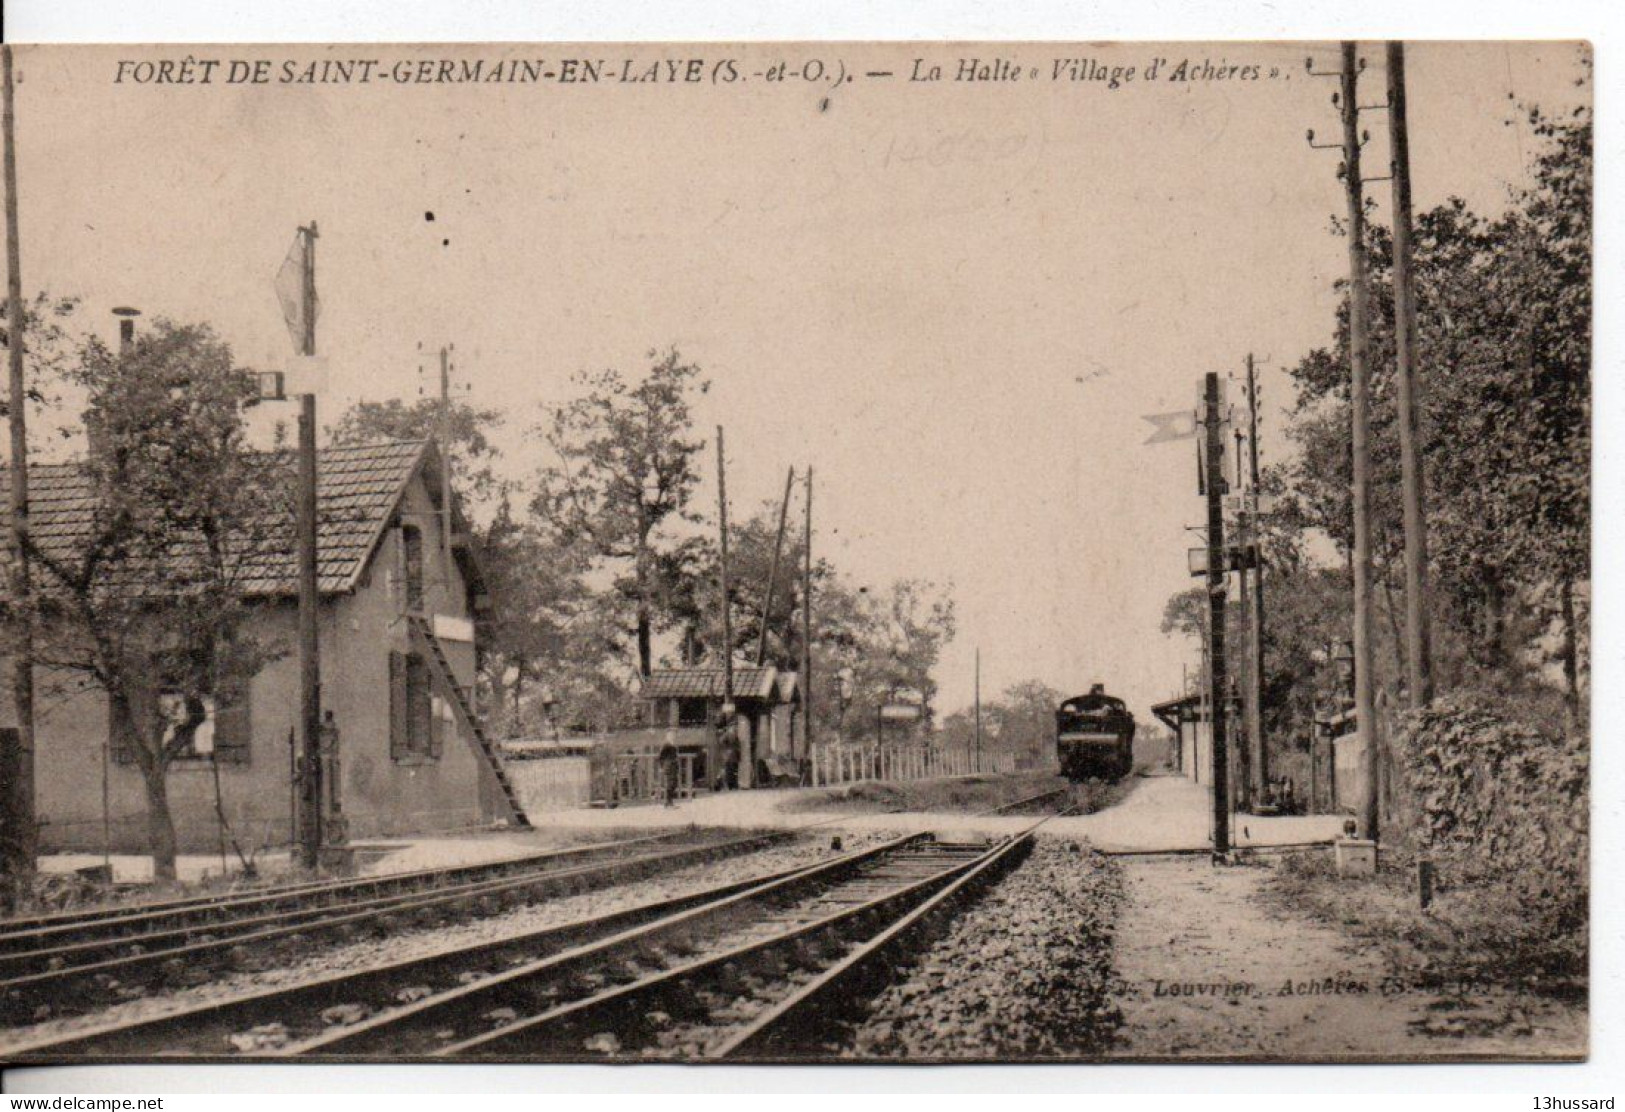 Carte Postale Ancienne Forêt De Saint Germain En Laye - La Halte "Village D'Achères" - Chemin De Fer - Acheres